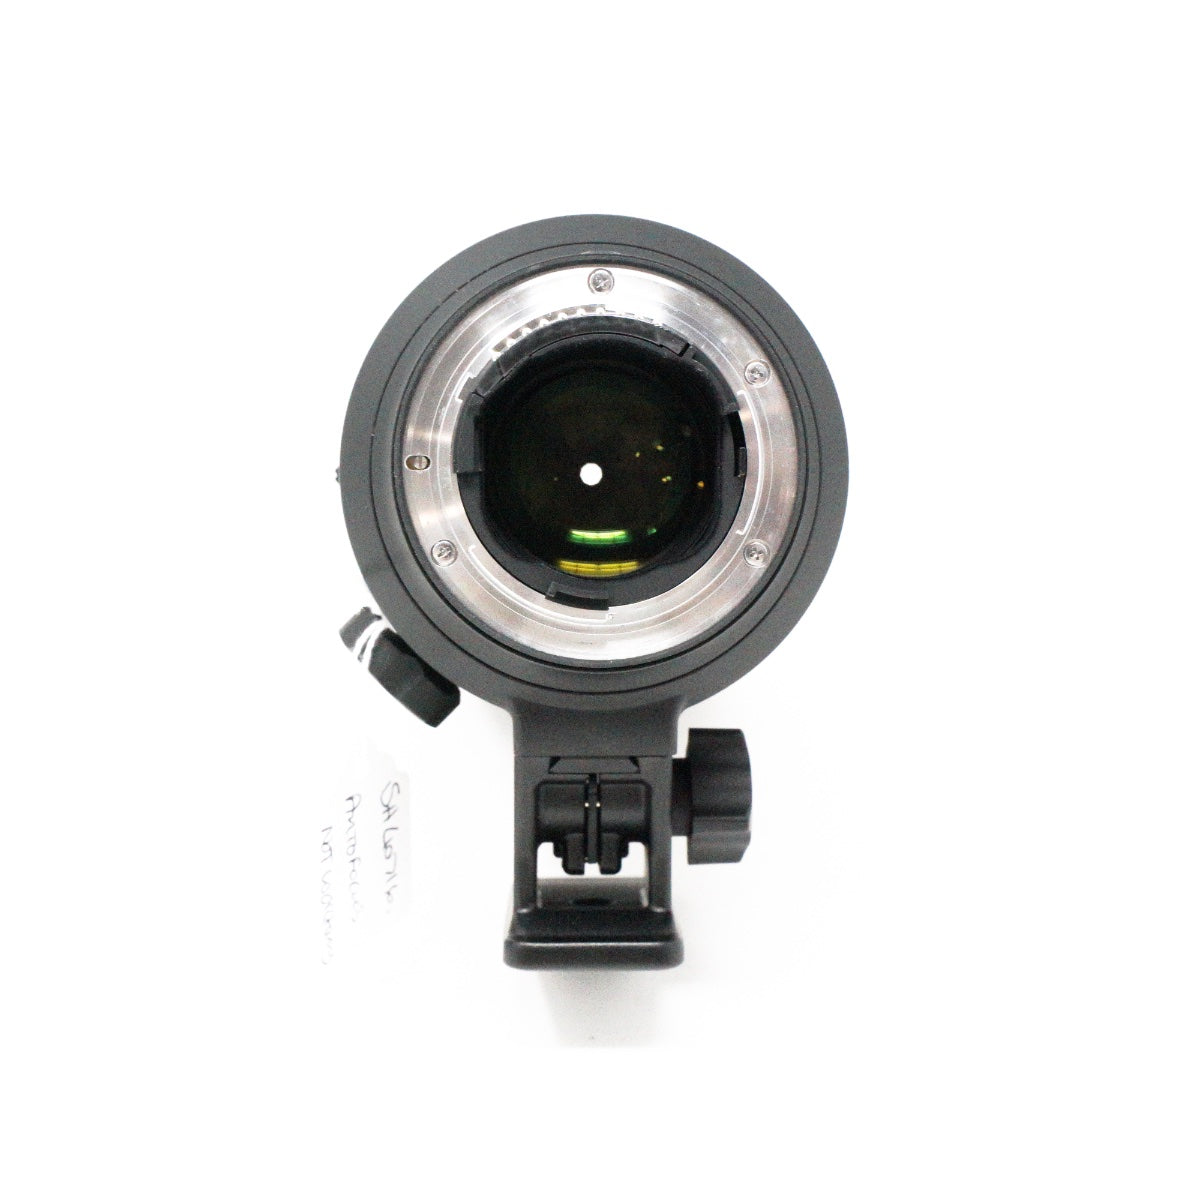 Used Nikon AF-S Nikkor 70-200mm F2.8G ED VR II lens